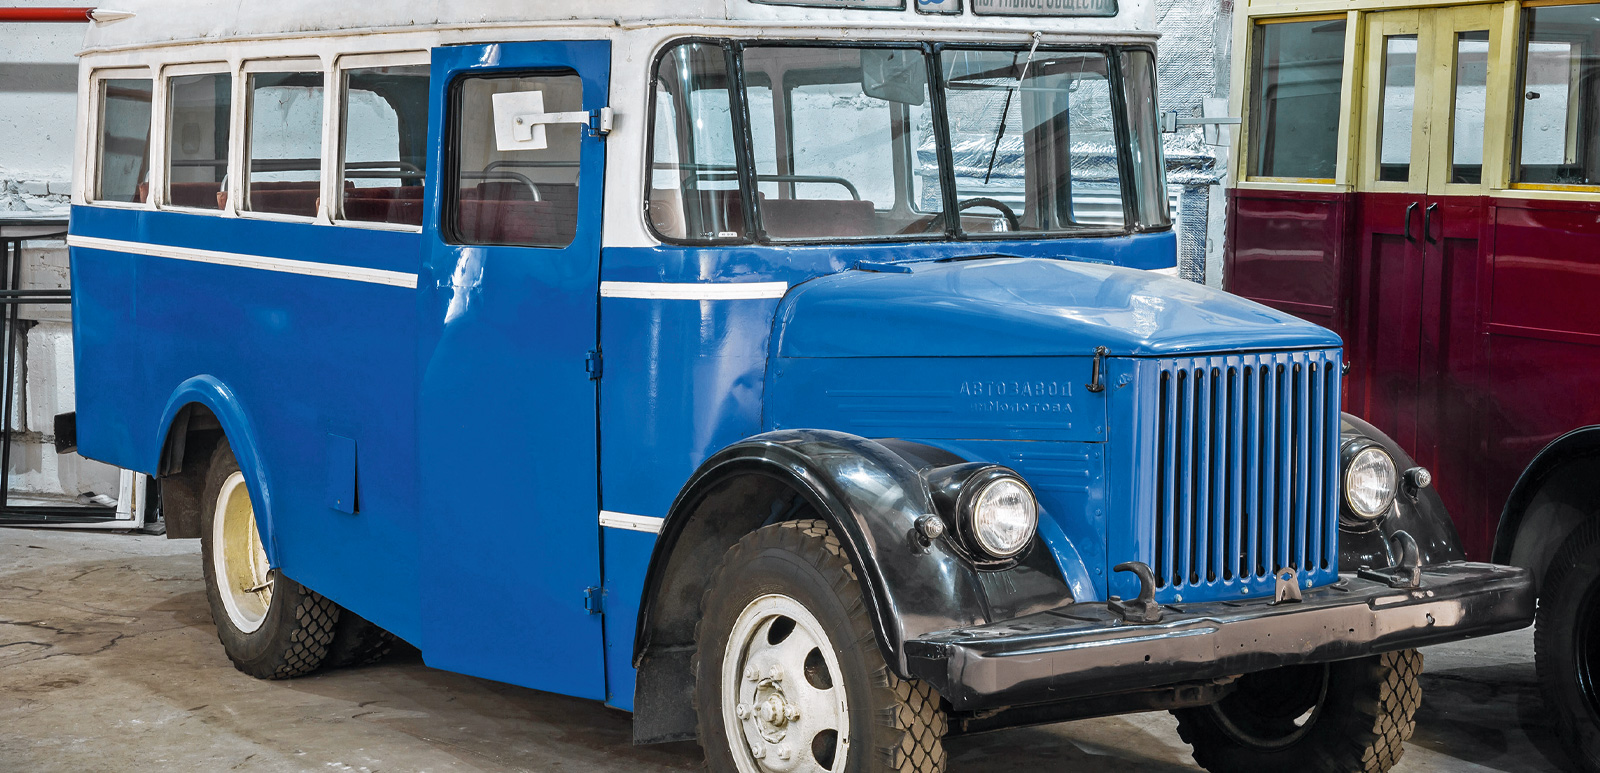 «Ботинок» из Кургана: как появился самый дешевый автобус в СССР